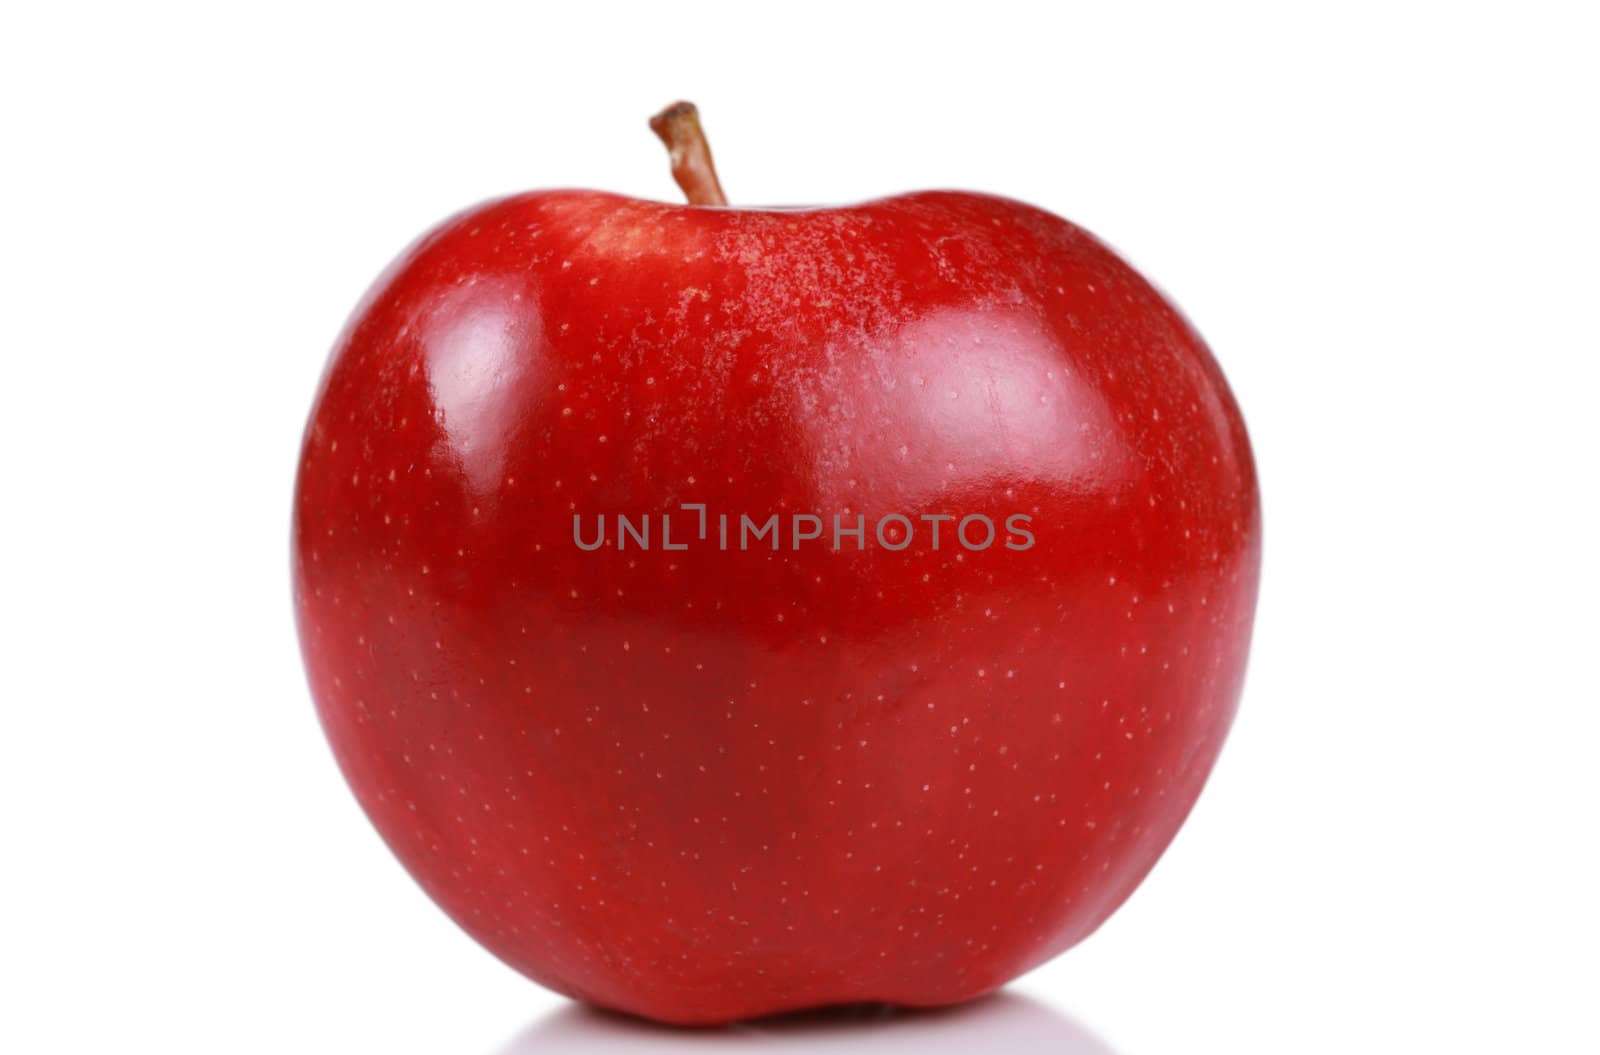 One red apple by jarenwicklund